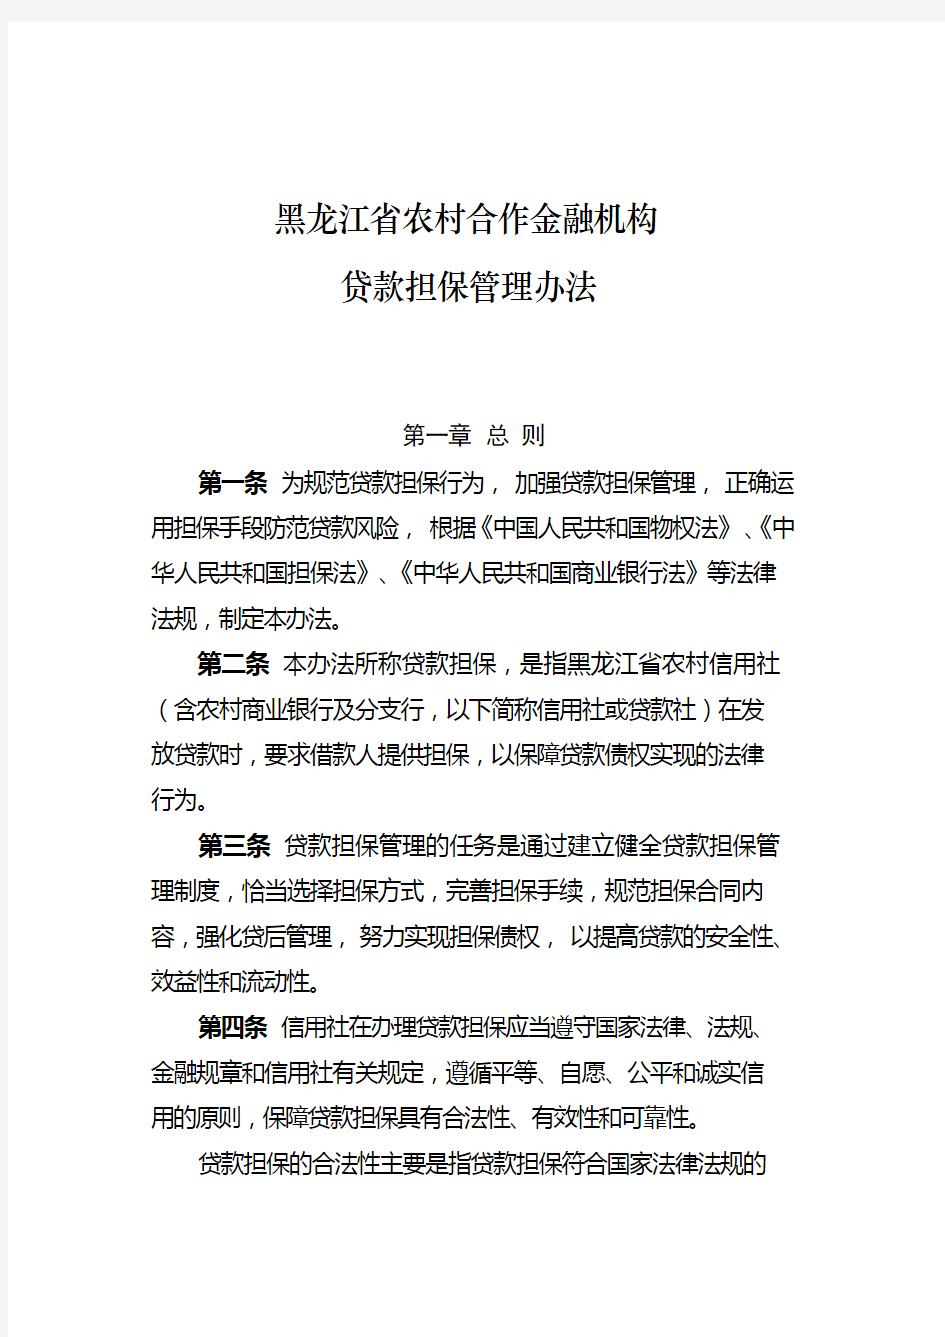 黑龙江省农村信用社贷款担保管理办法